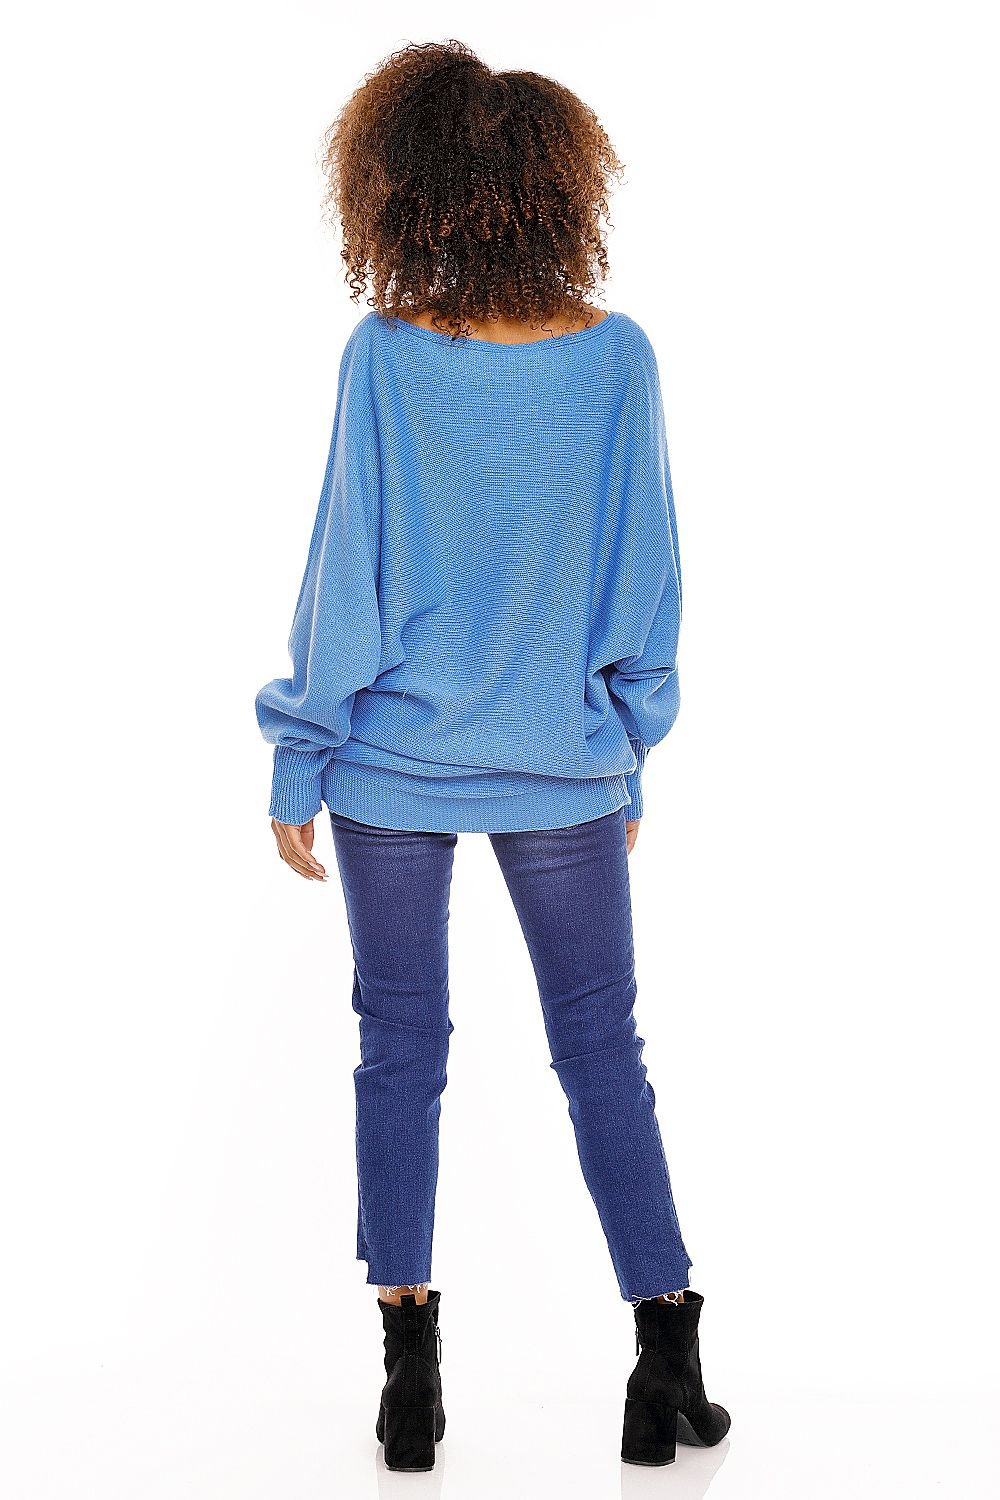 Bat style blouse model 94499 Blue by PeeKaBoo - One Size